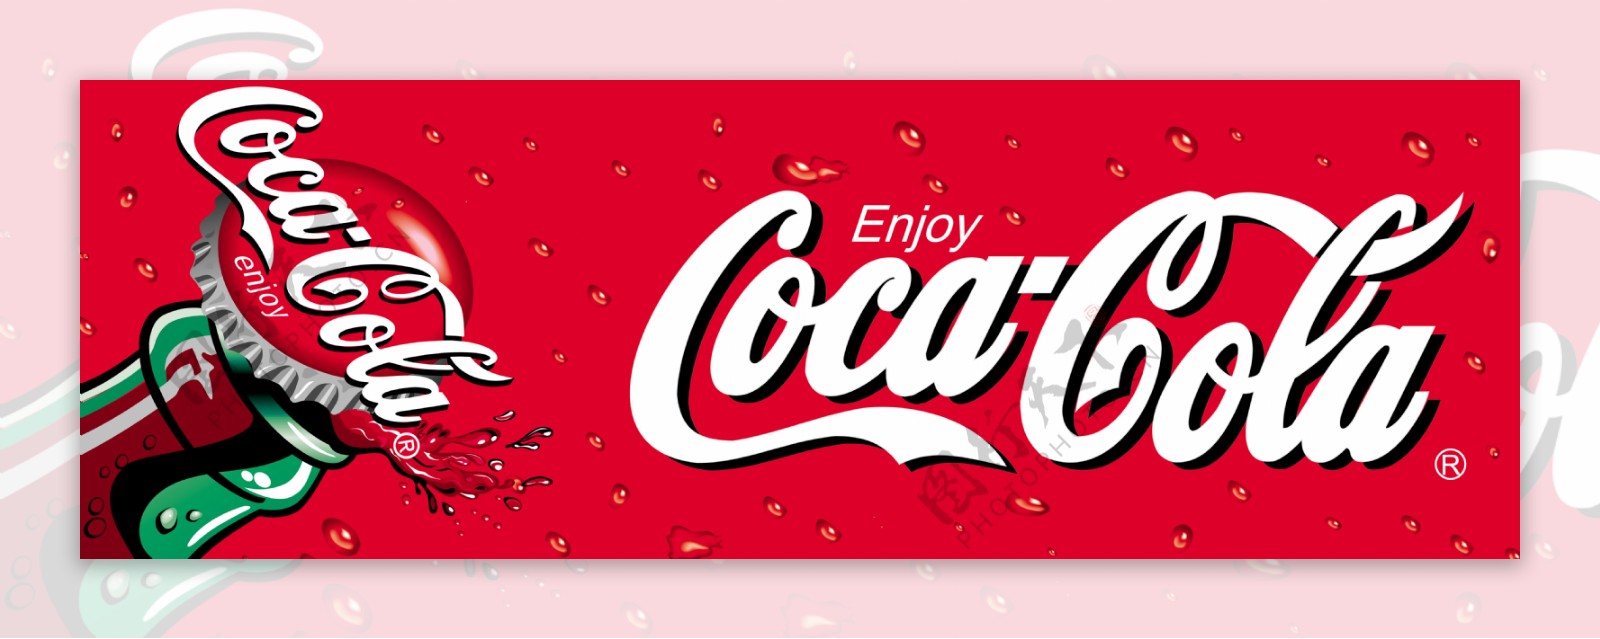 可口可乐高清精品图片